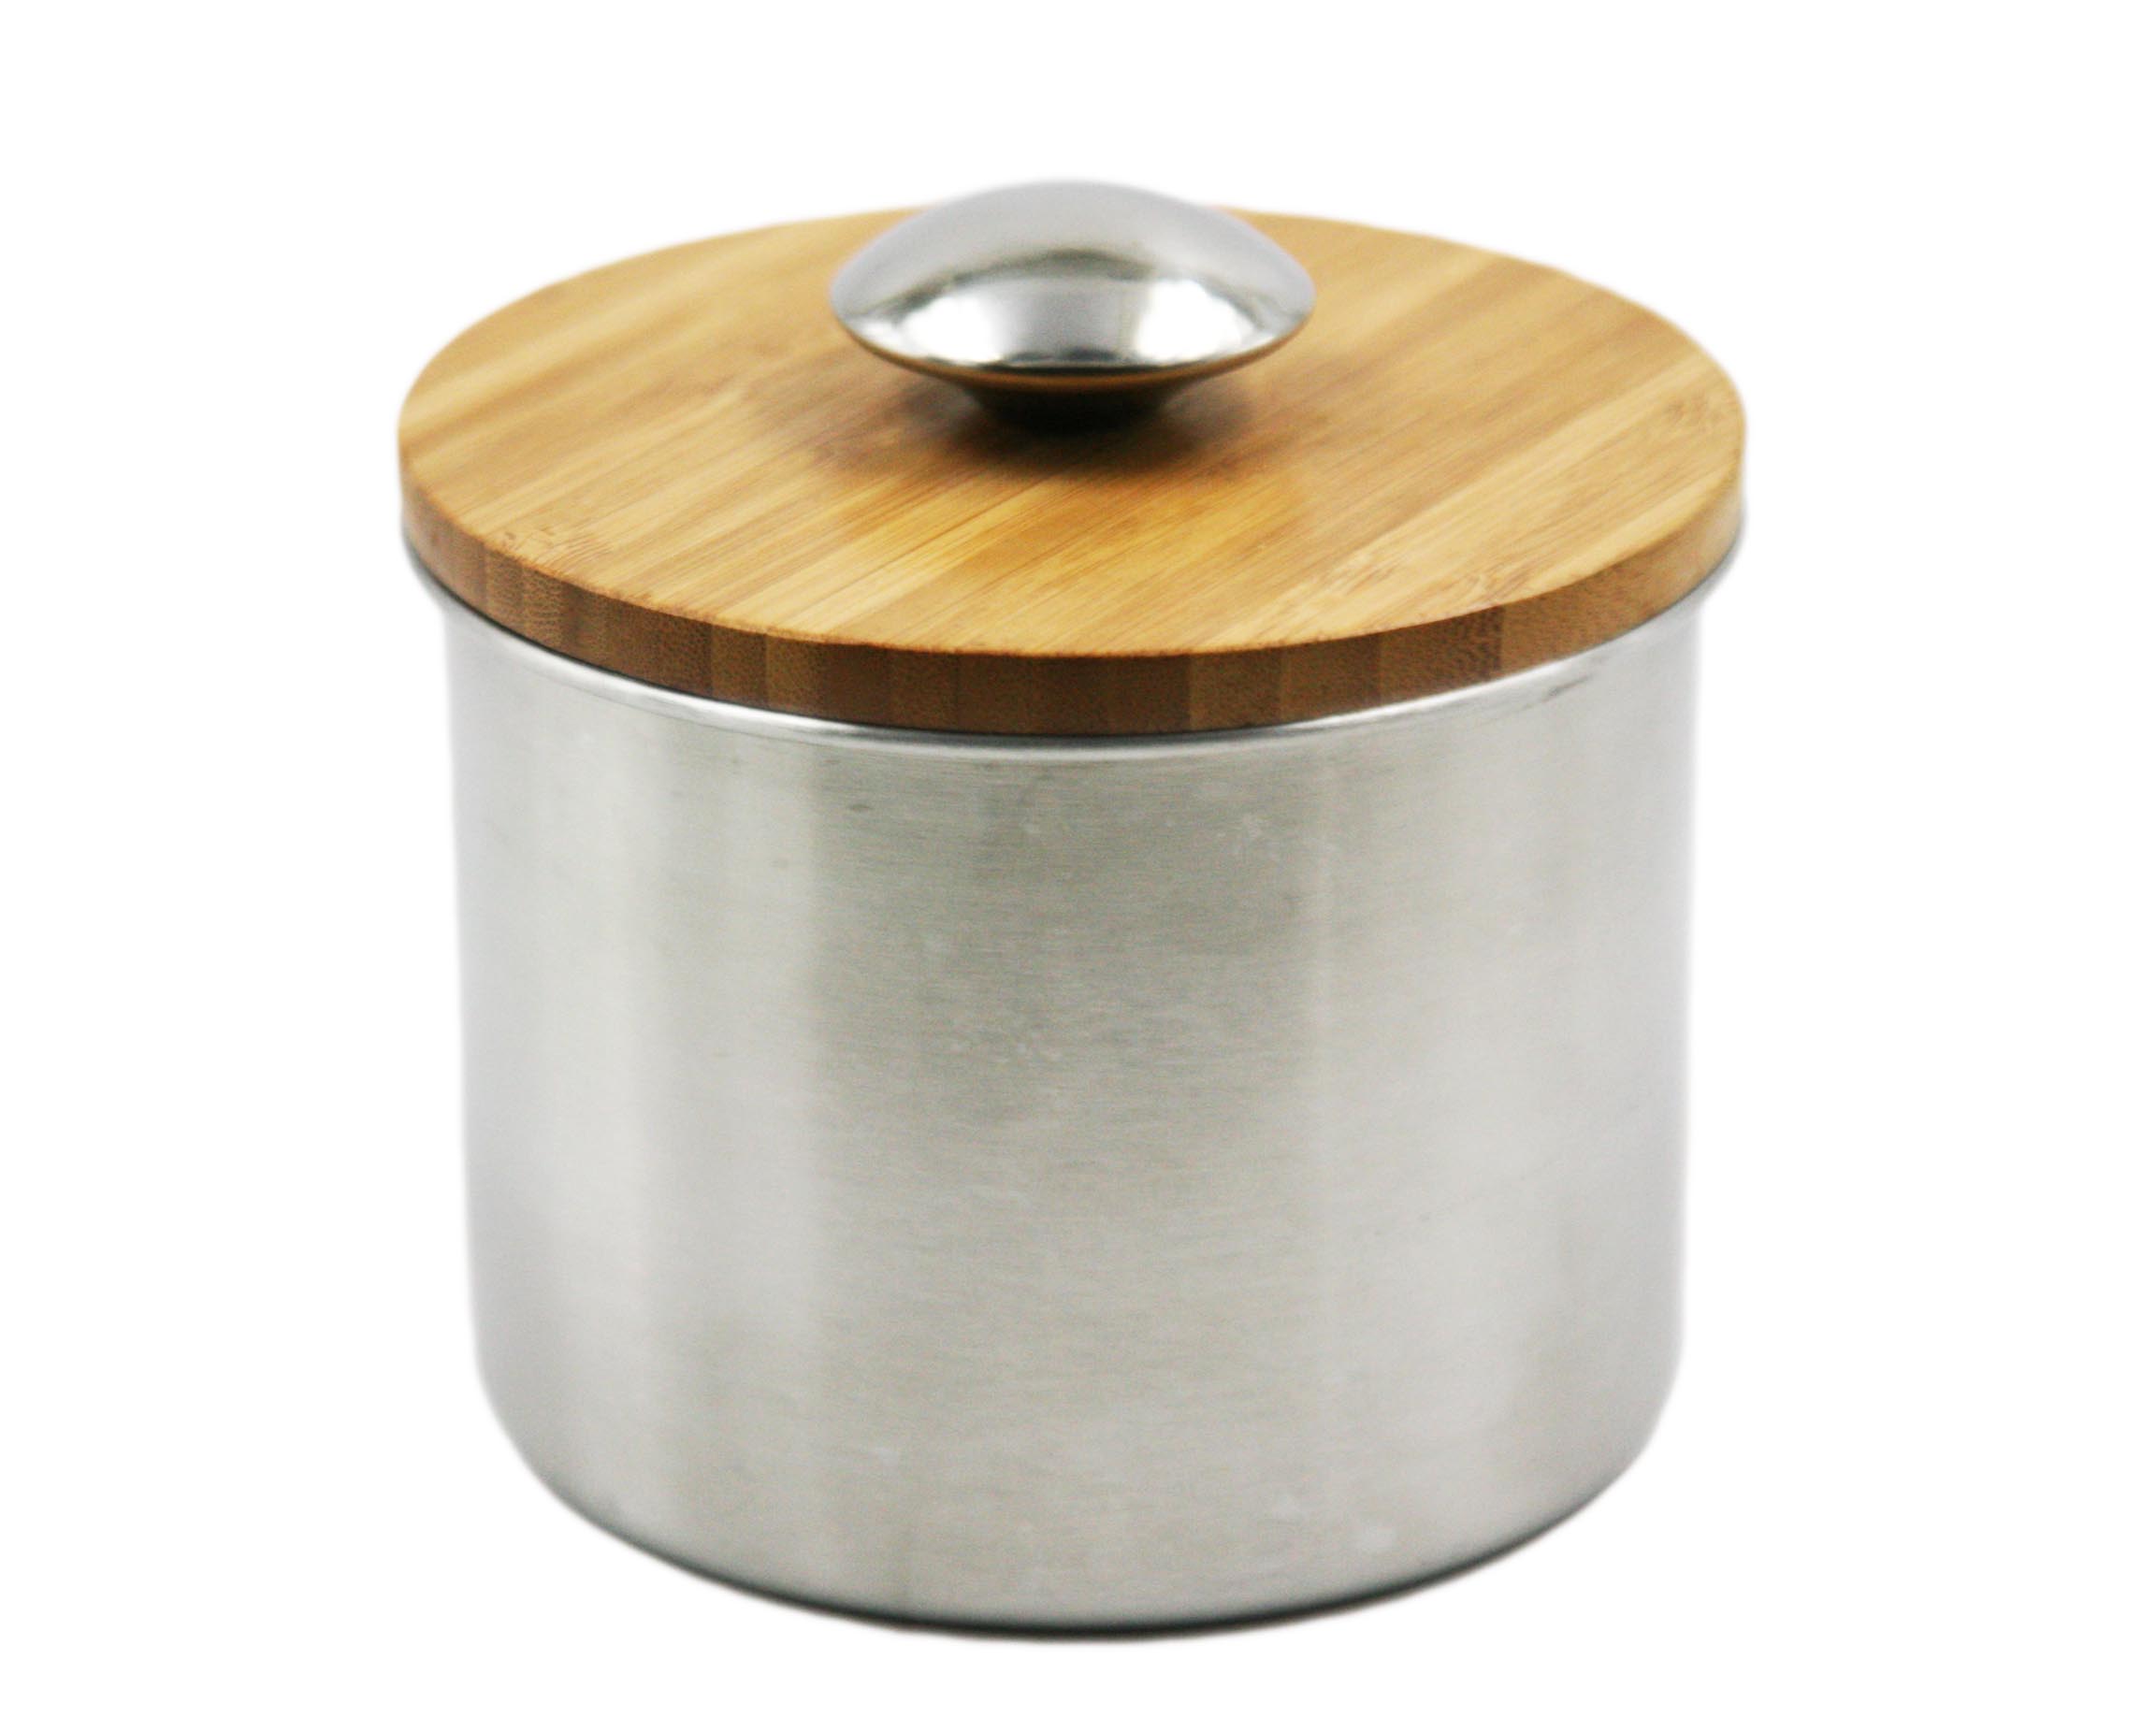 Haut de gamme en acier inoxydable de stockage Pot / Can / pot avec couvercle en bois EB-MF022